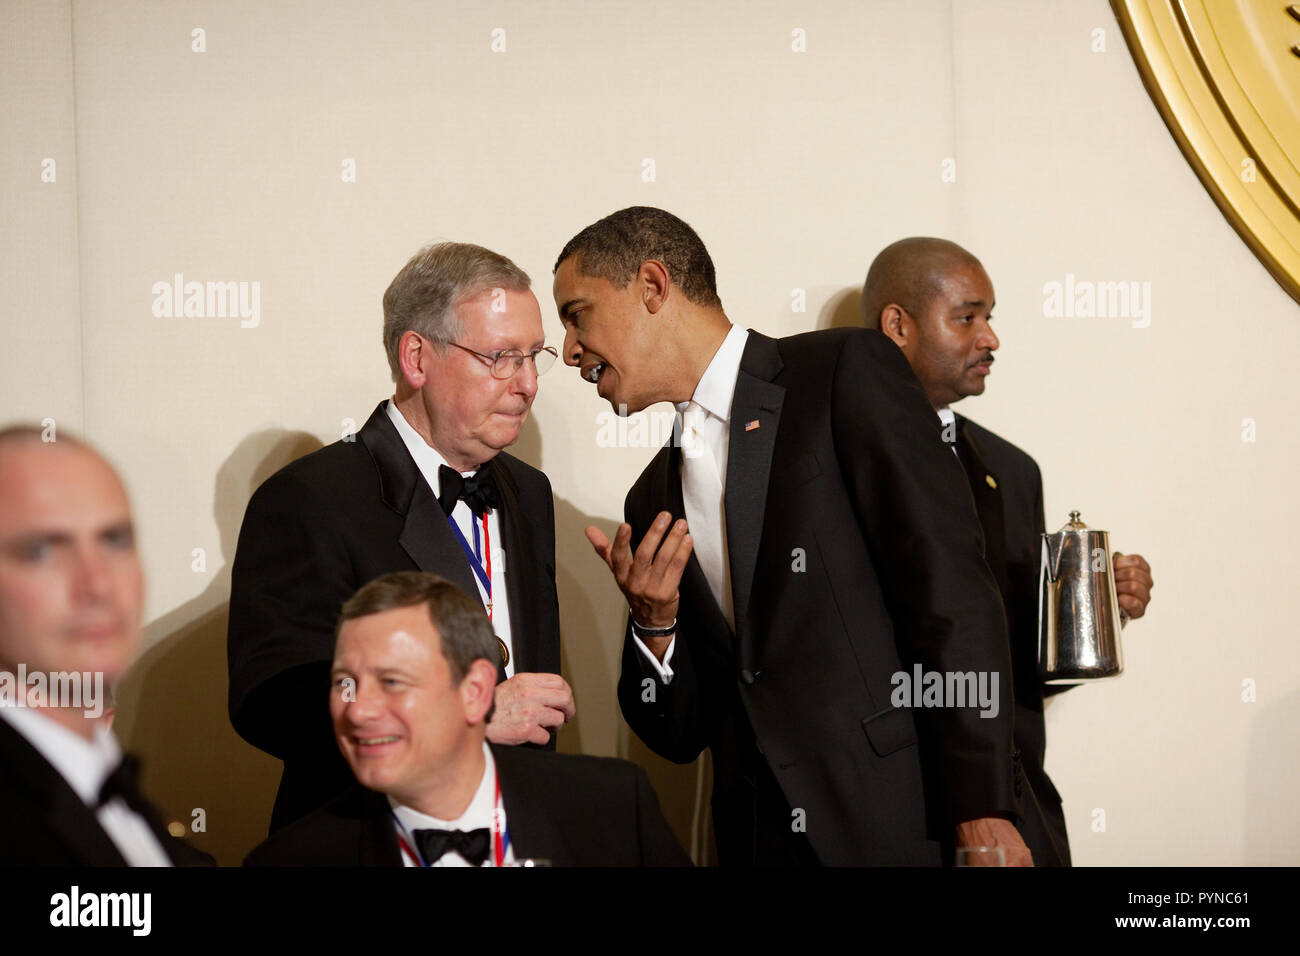 Le président Barack Obama s'entretient avec le leader de l'opposition au Sénat Mitch McConnell à la luzerne annuelle dîner à l'hôtel Hilton de la capitale, Washington, D.C. Banque D'Images